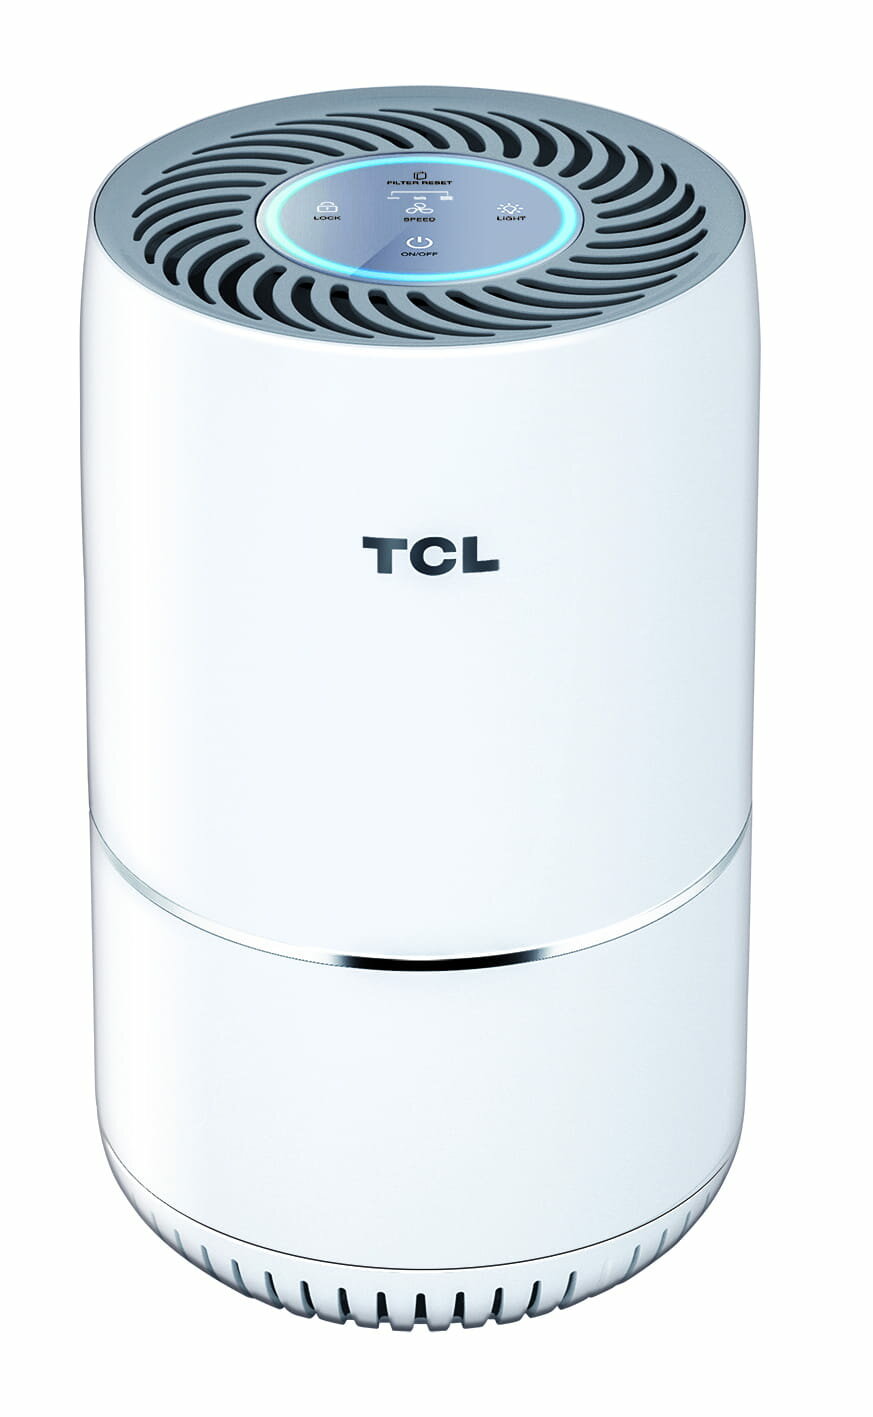 Oczyszczacz powietrza TCL KJ65F widok na front urządzenia na białym tle